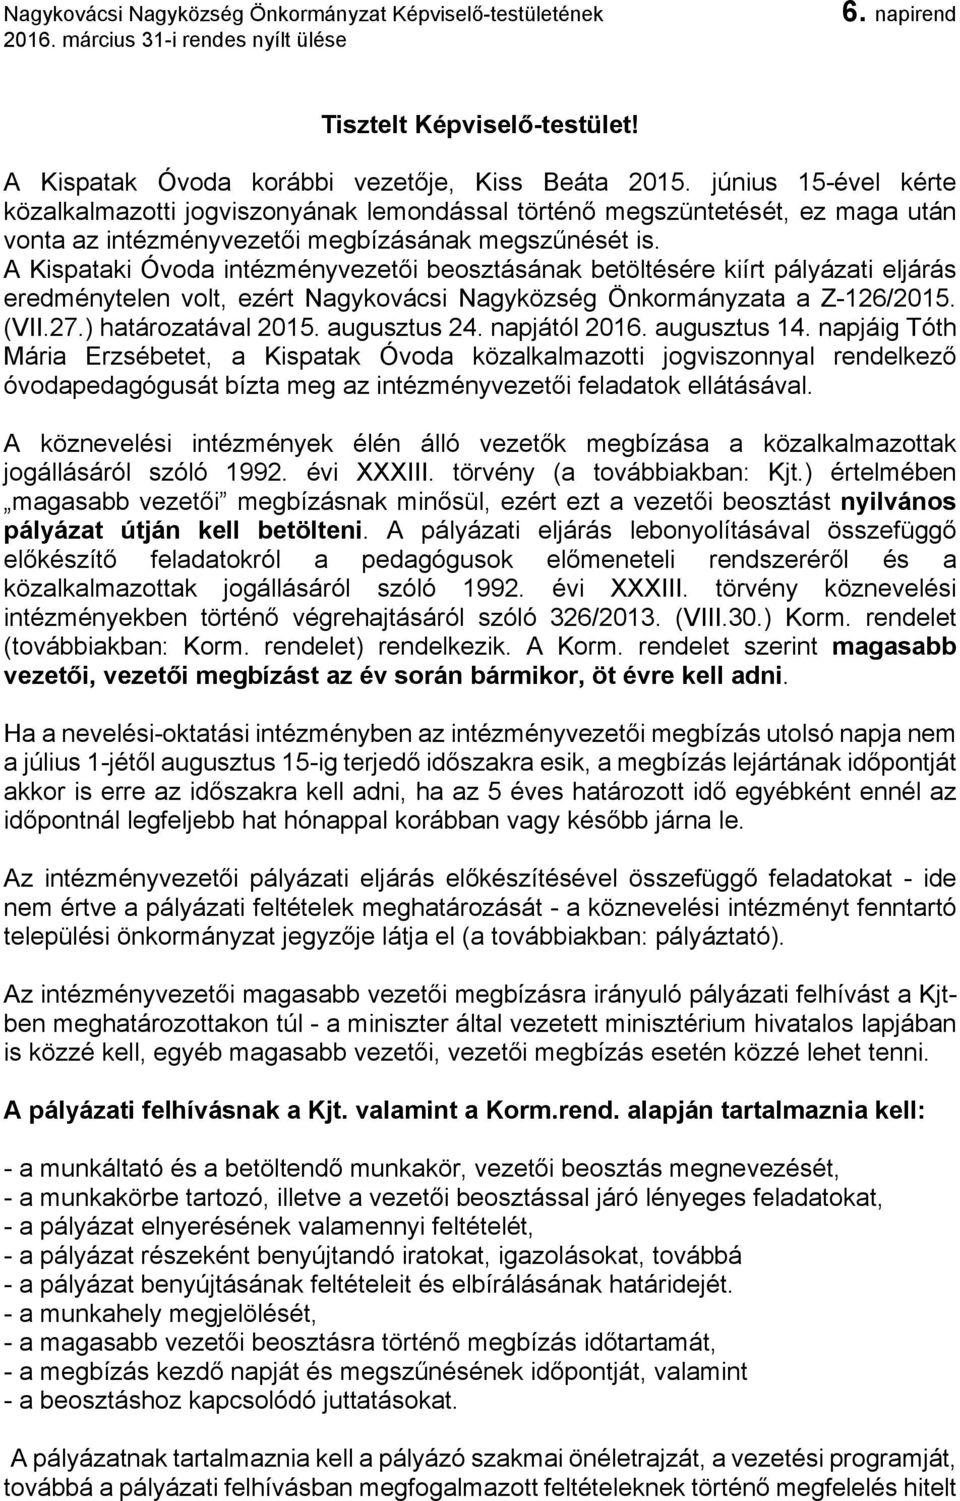 A Kispataki Óvoda intézményvezetői beosztásának betöltésére kiírt pályázati eljárás eredménytelen volt, ezért Nagykovácsi Nagyközség Önkormányzata a Z-126/2015. (VII.27.) határozatával 2015.